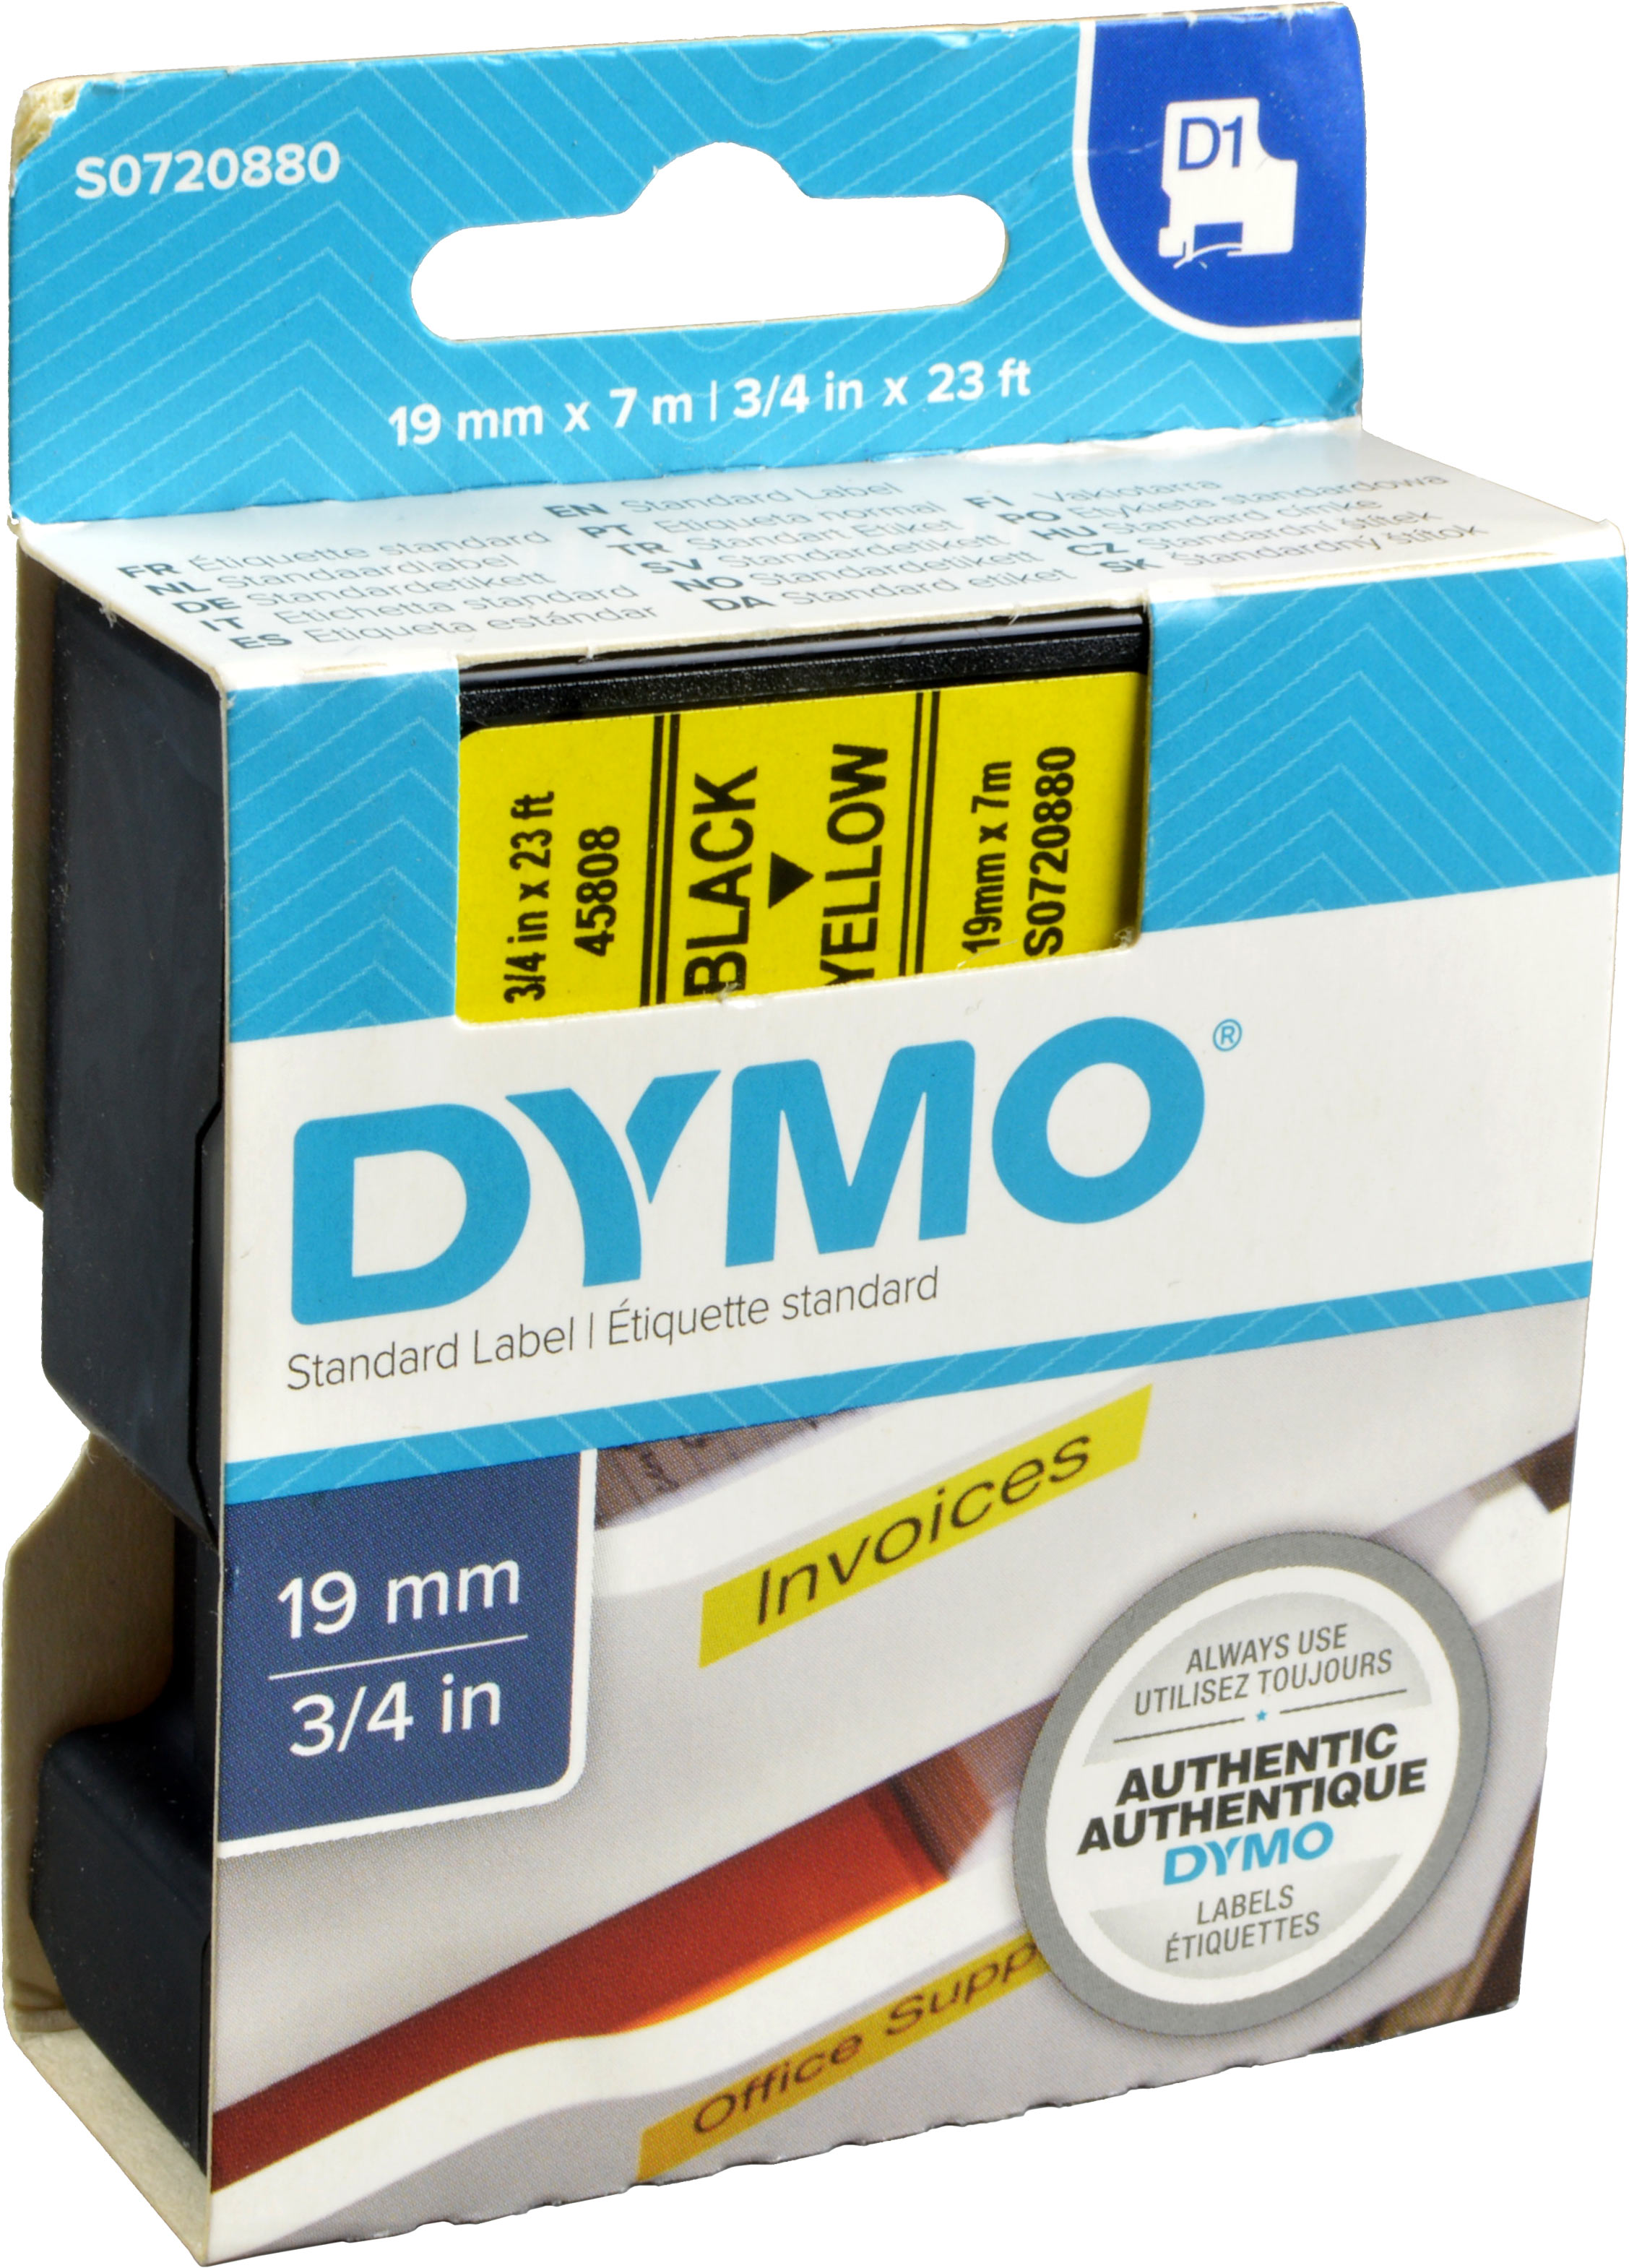 Dymo Originalband 45808  schwarz auf gelb  19mm x 7m